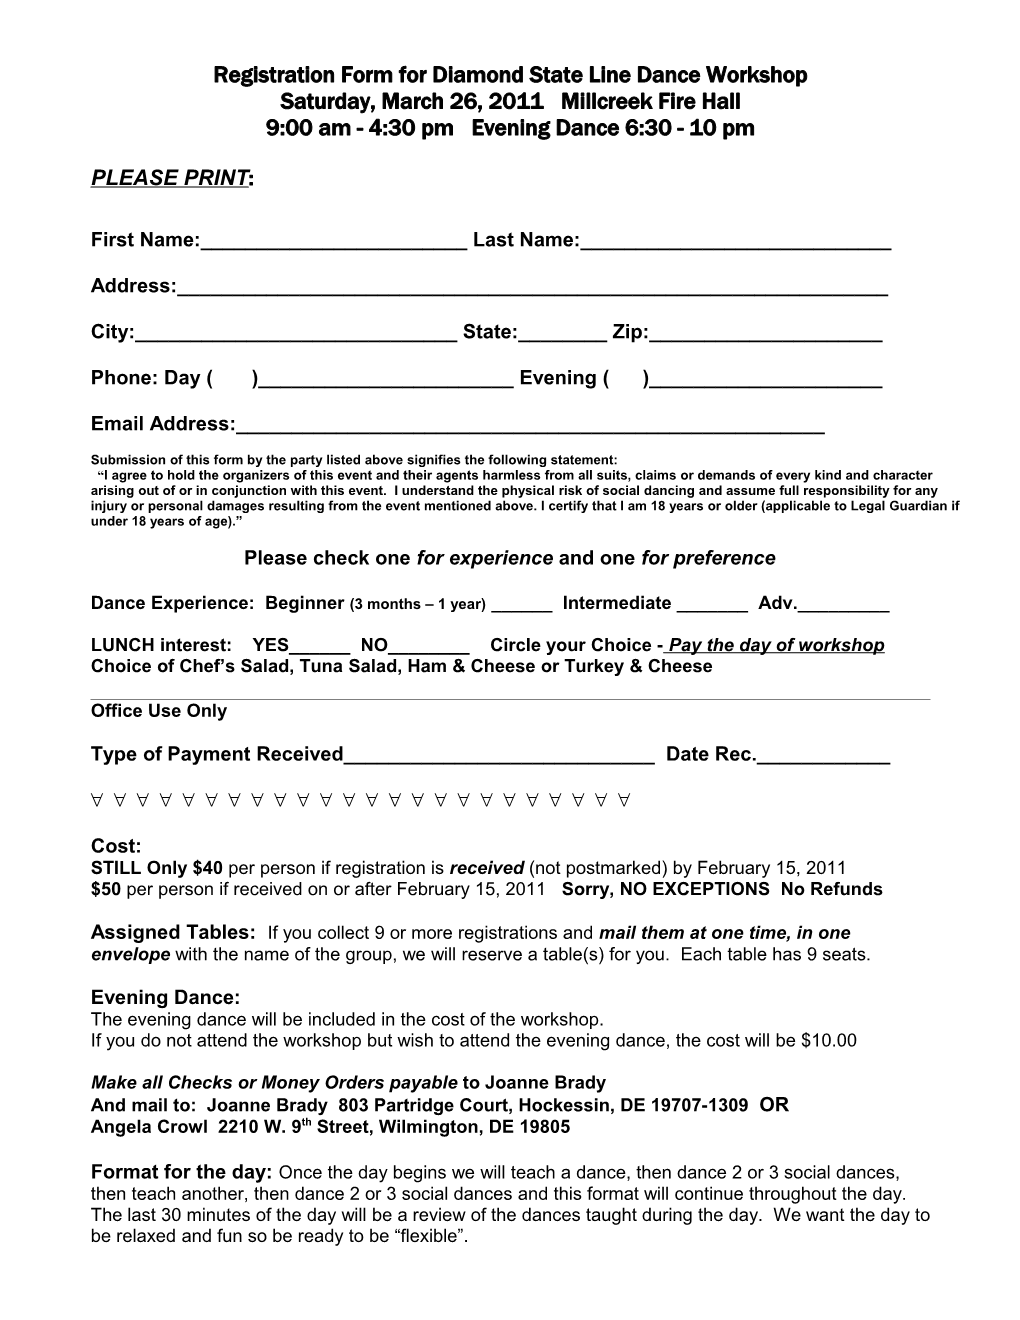 Registration Form For